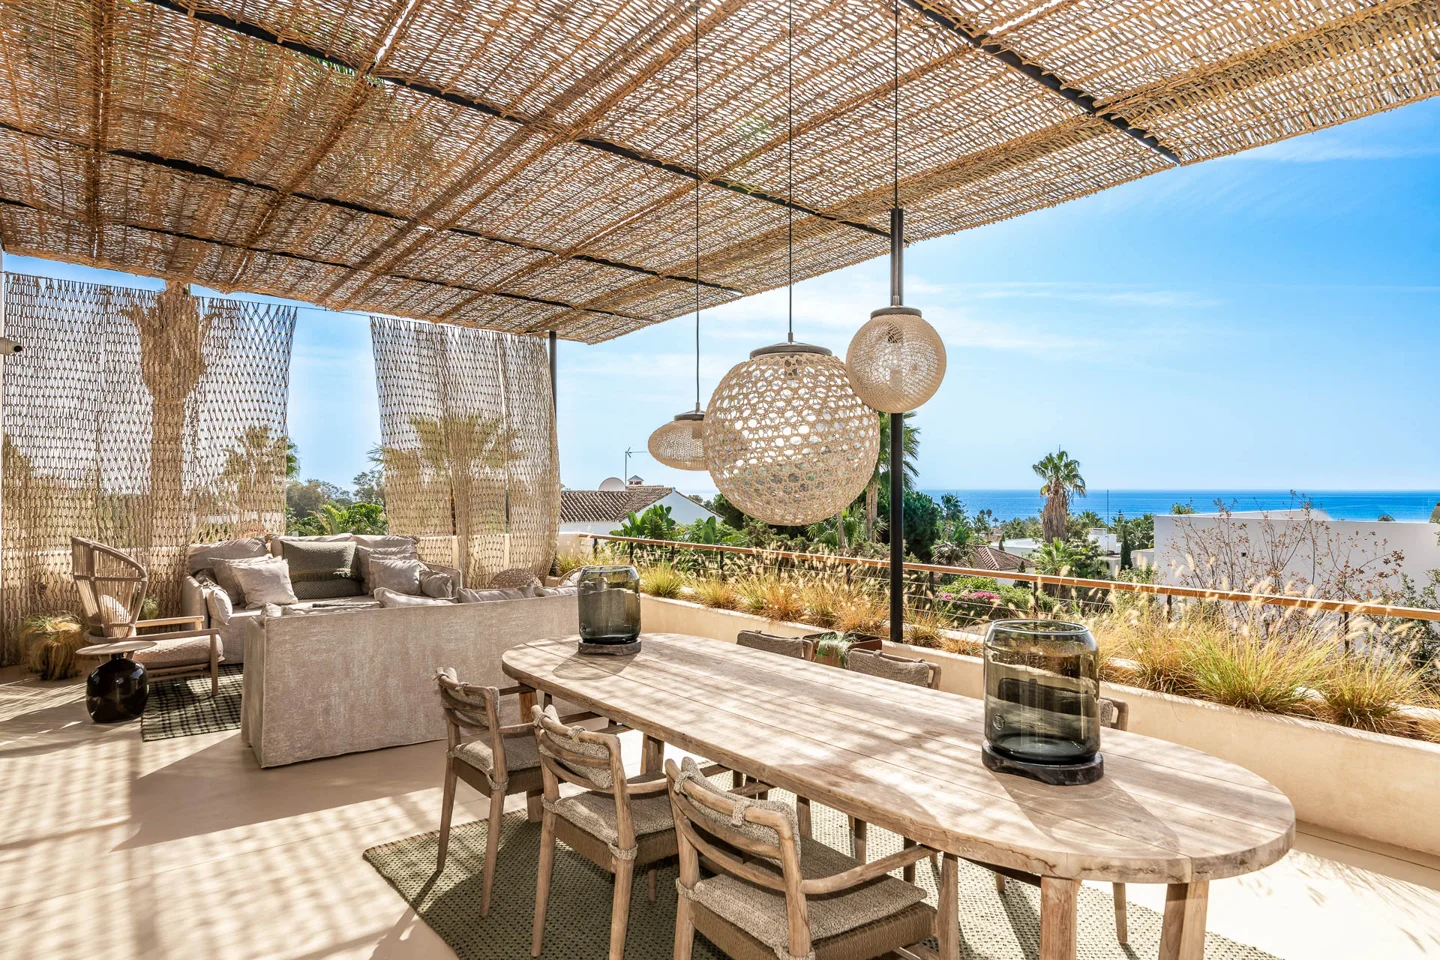 Excepcional villa en Marbesa estilo Mediterraneo en la playa